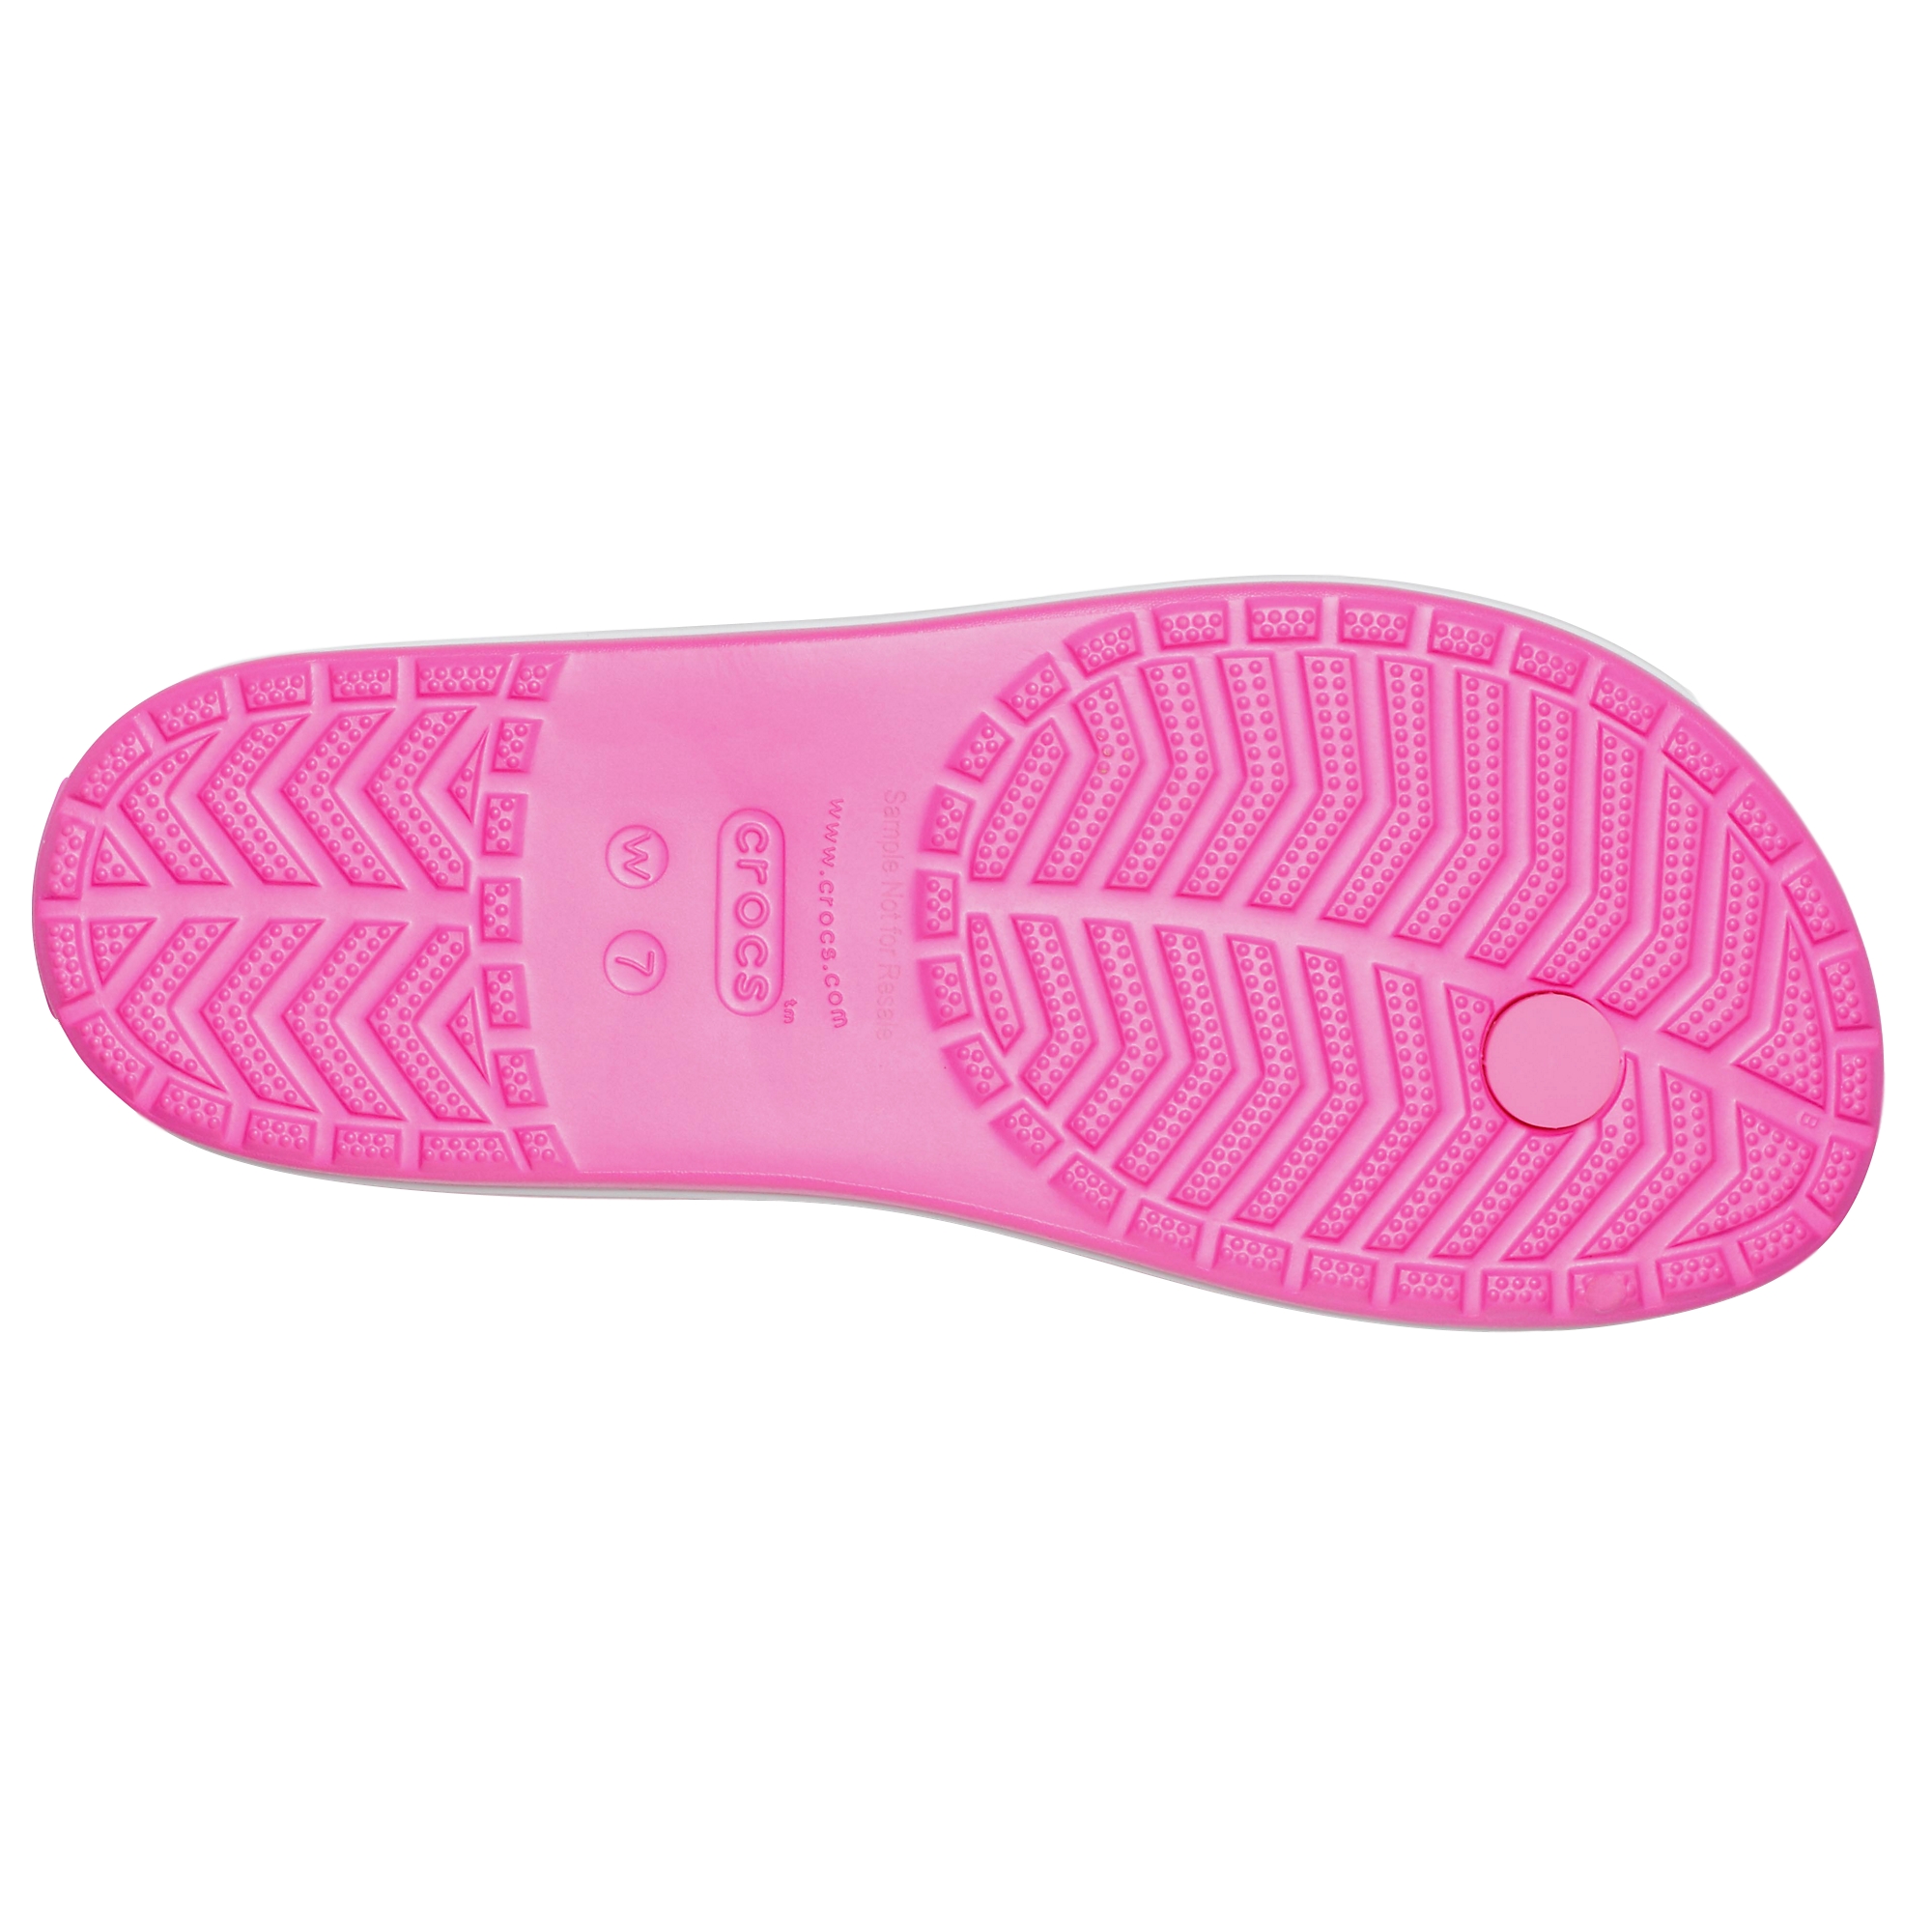 Crocs Crocband Flip Damen Sandale Zehentrenner Badelatsche 206100 Pink 